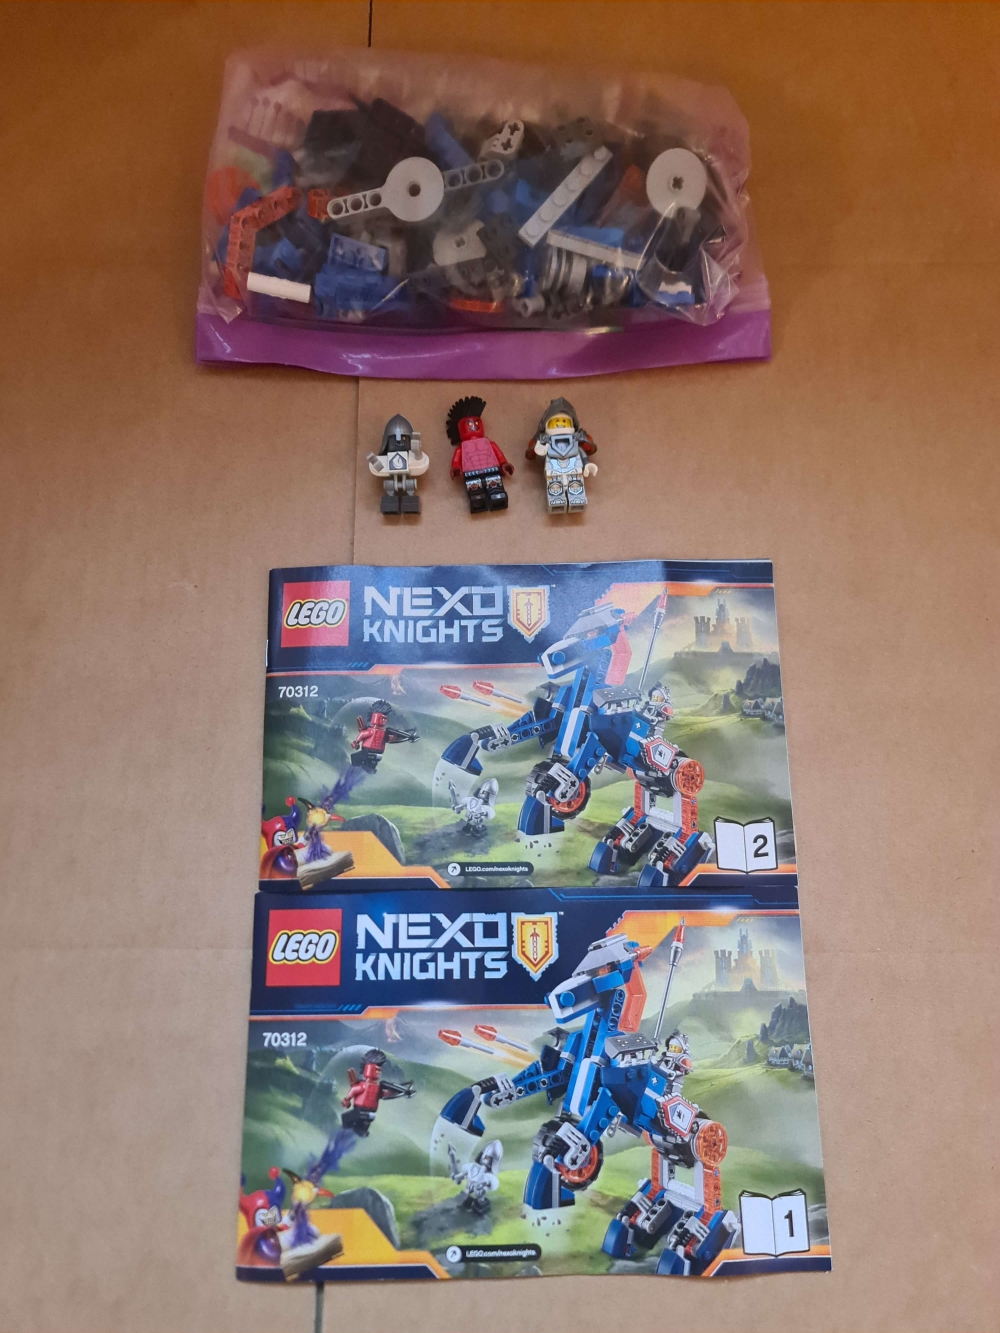 Sett 70312 fra Lego Nexo Knights serien.

Meget pent. Komplett med manual. 